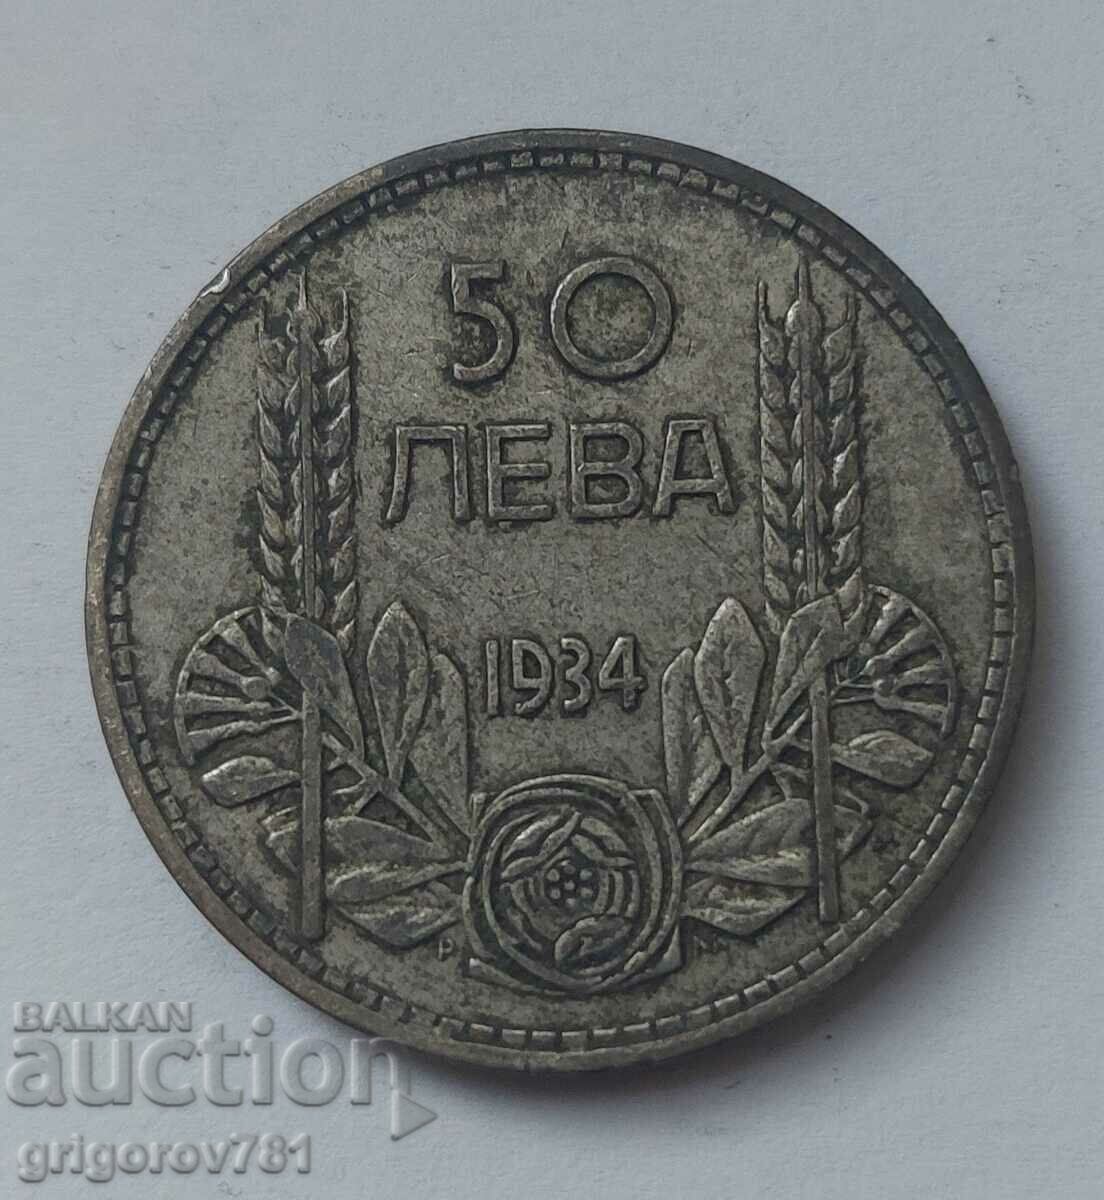 Ασήμι 50 λέβα Βουλγαρία 1934 - ασημένιο νόμισμα #25